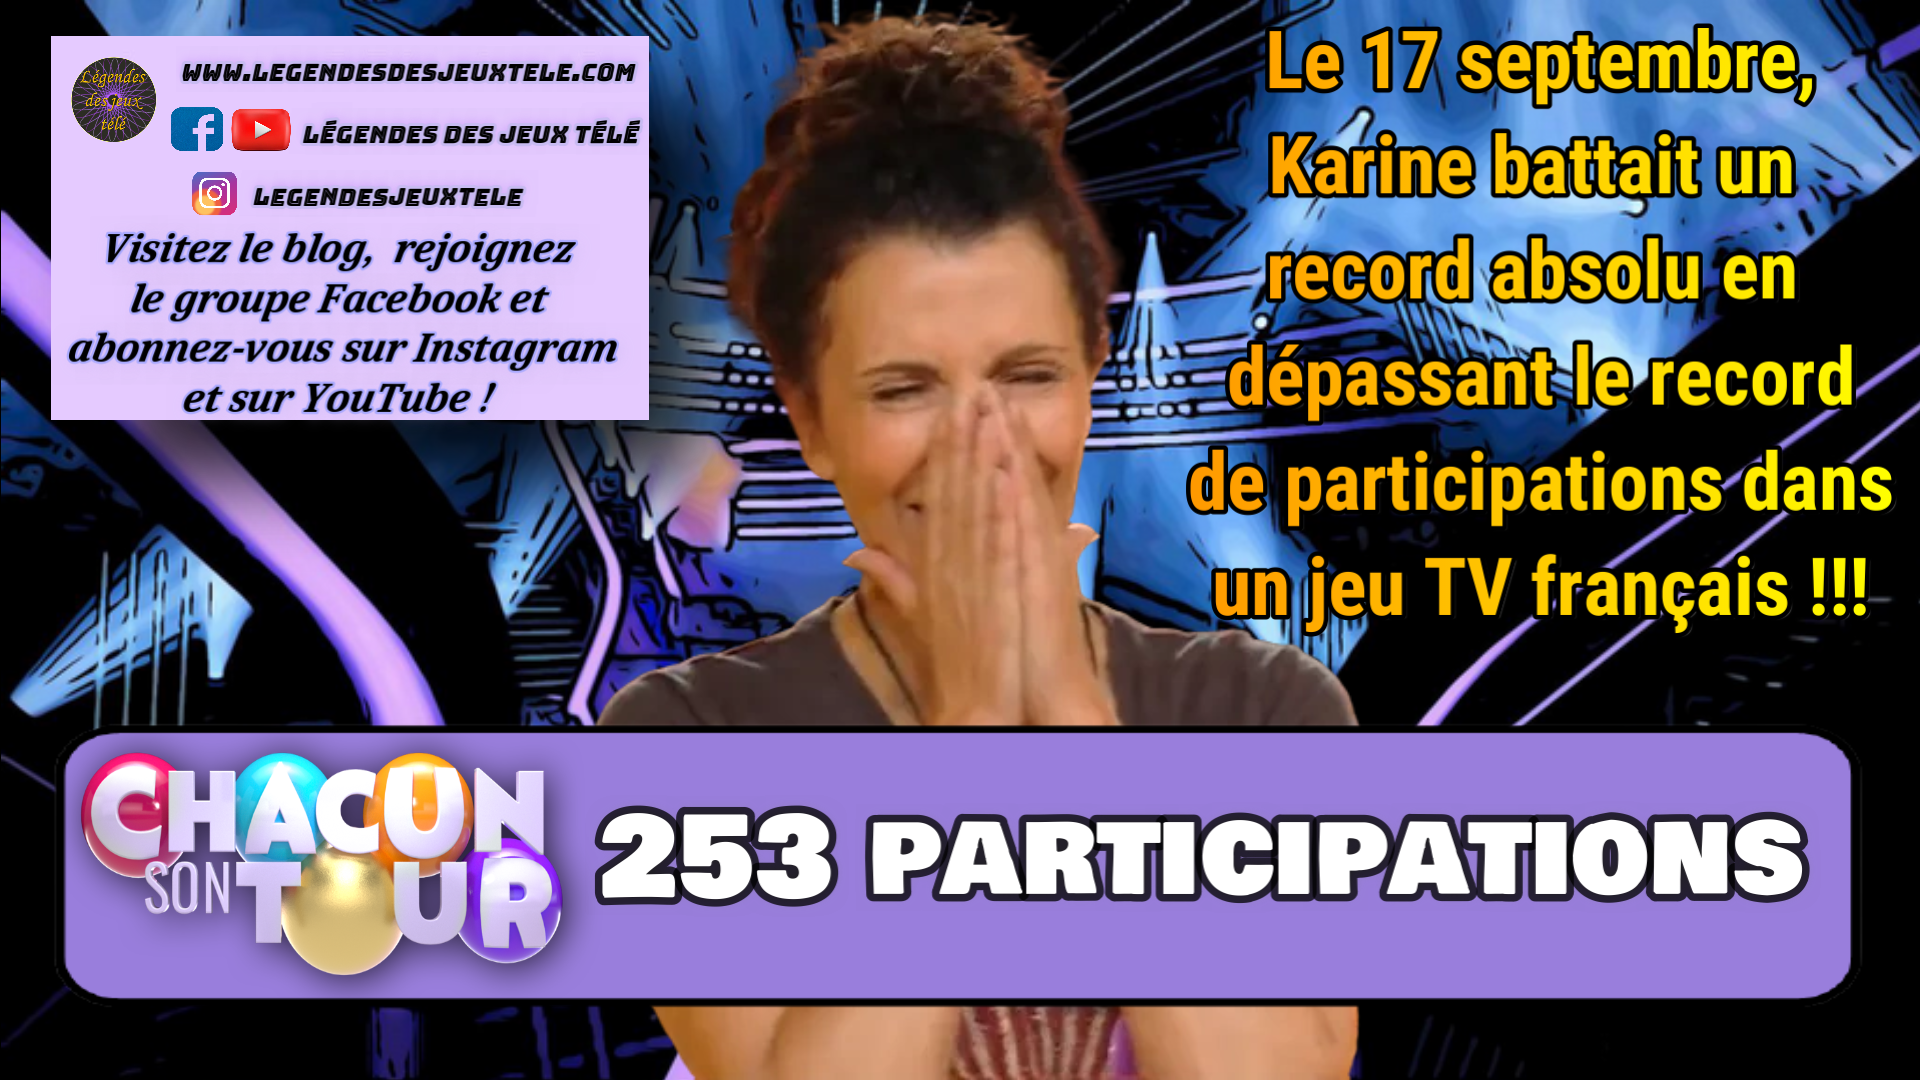 Record absolu pour un jeu TV français battu par Karine dans « chacun son tour » !!!